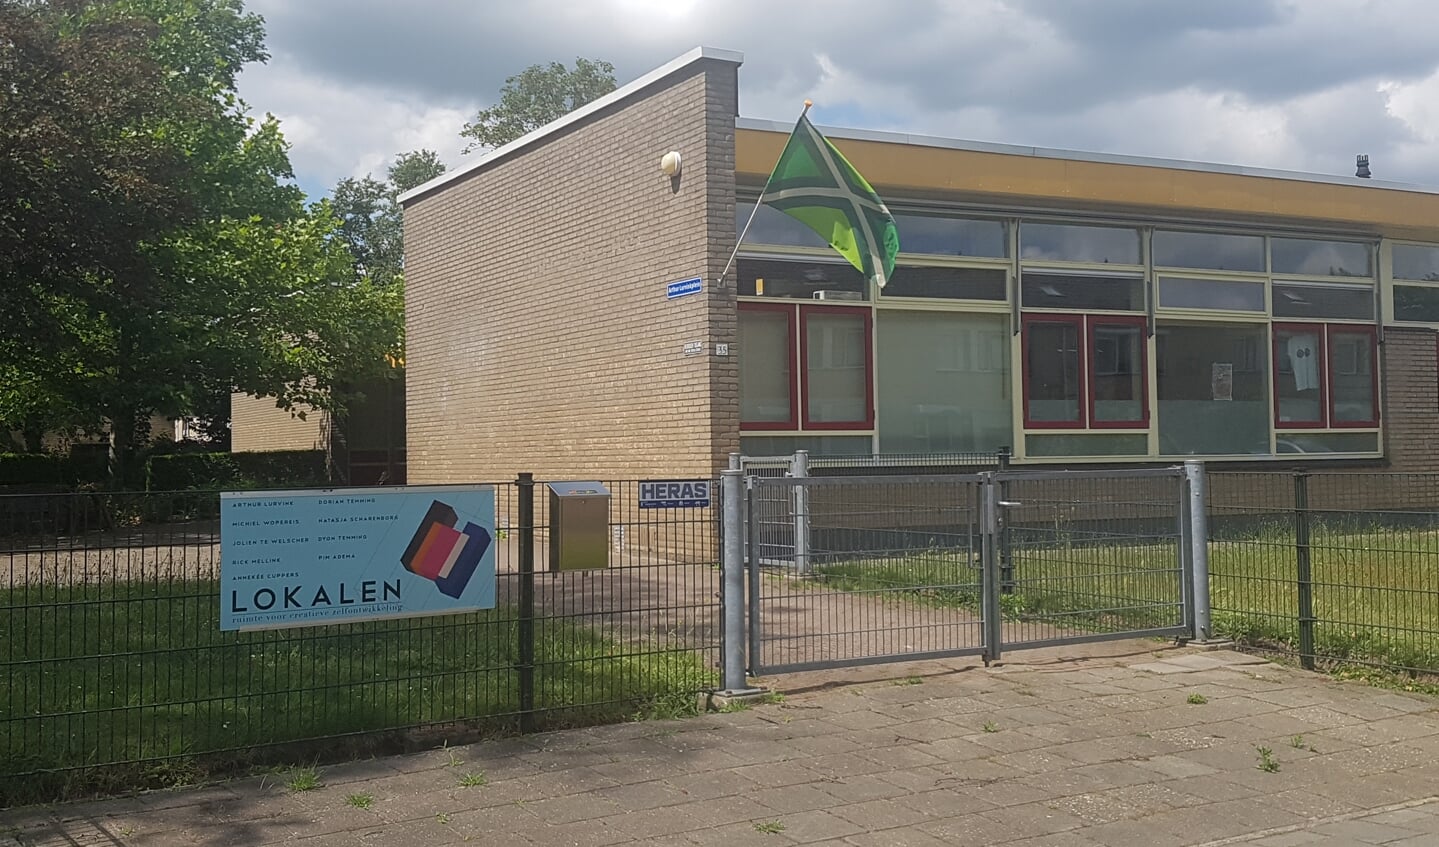 Lokalen in Lichtenvoorde staat op de nominatie voor verduurzaming. Foto: Kyra Broshuis